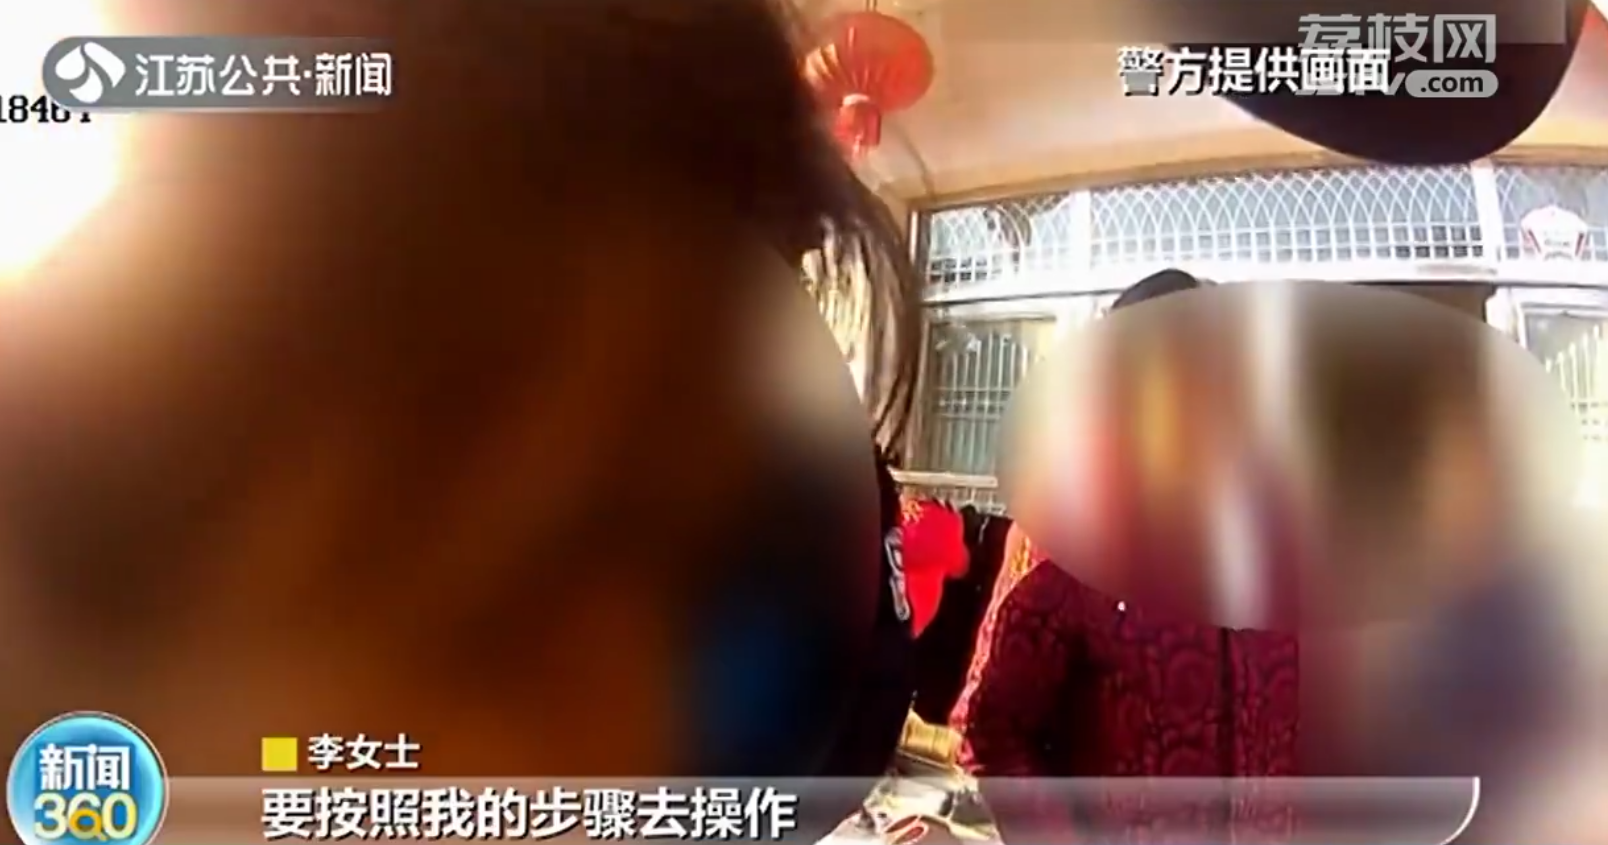 南京女子遭遇假客服诈骗 民警及时赶到一番操作迅速止损